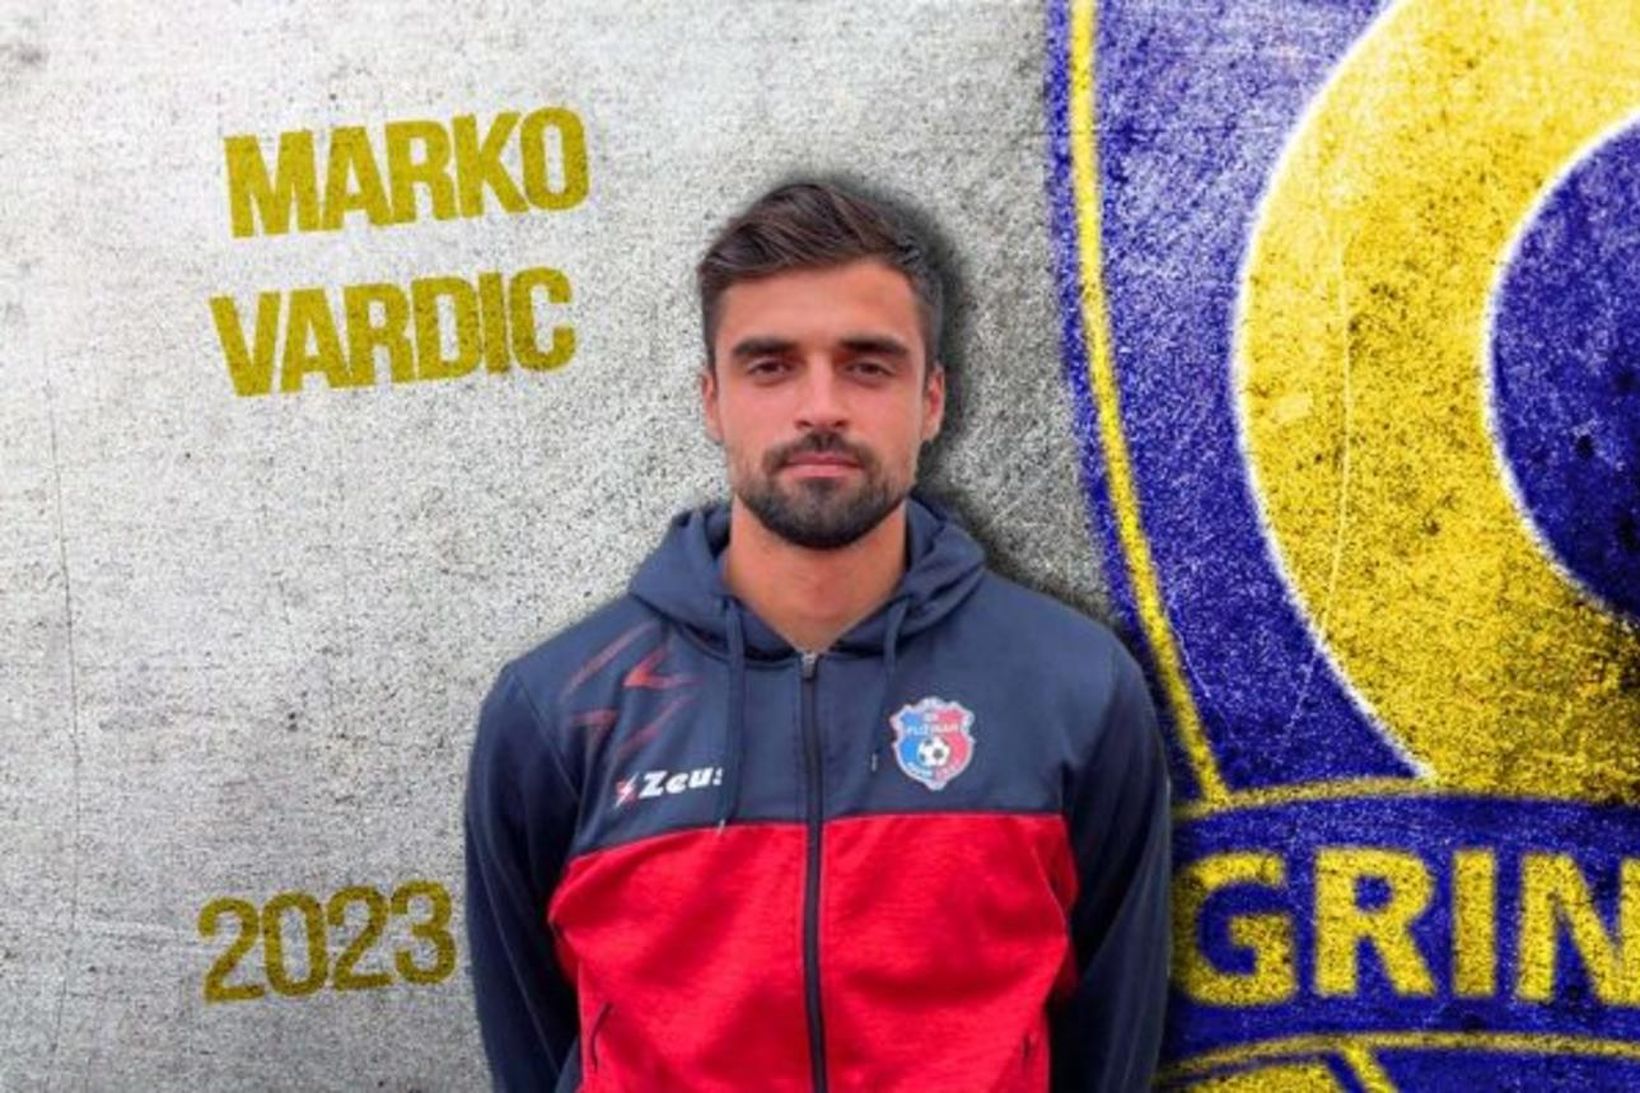 Marko Vardic.